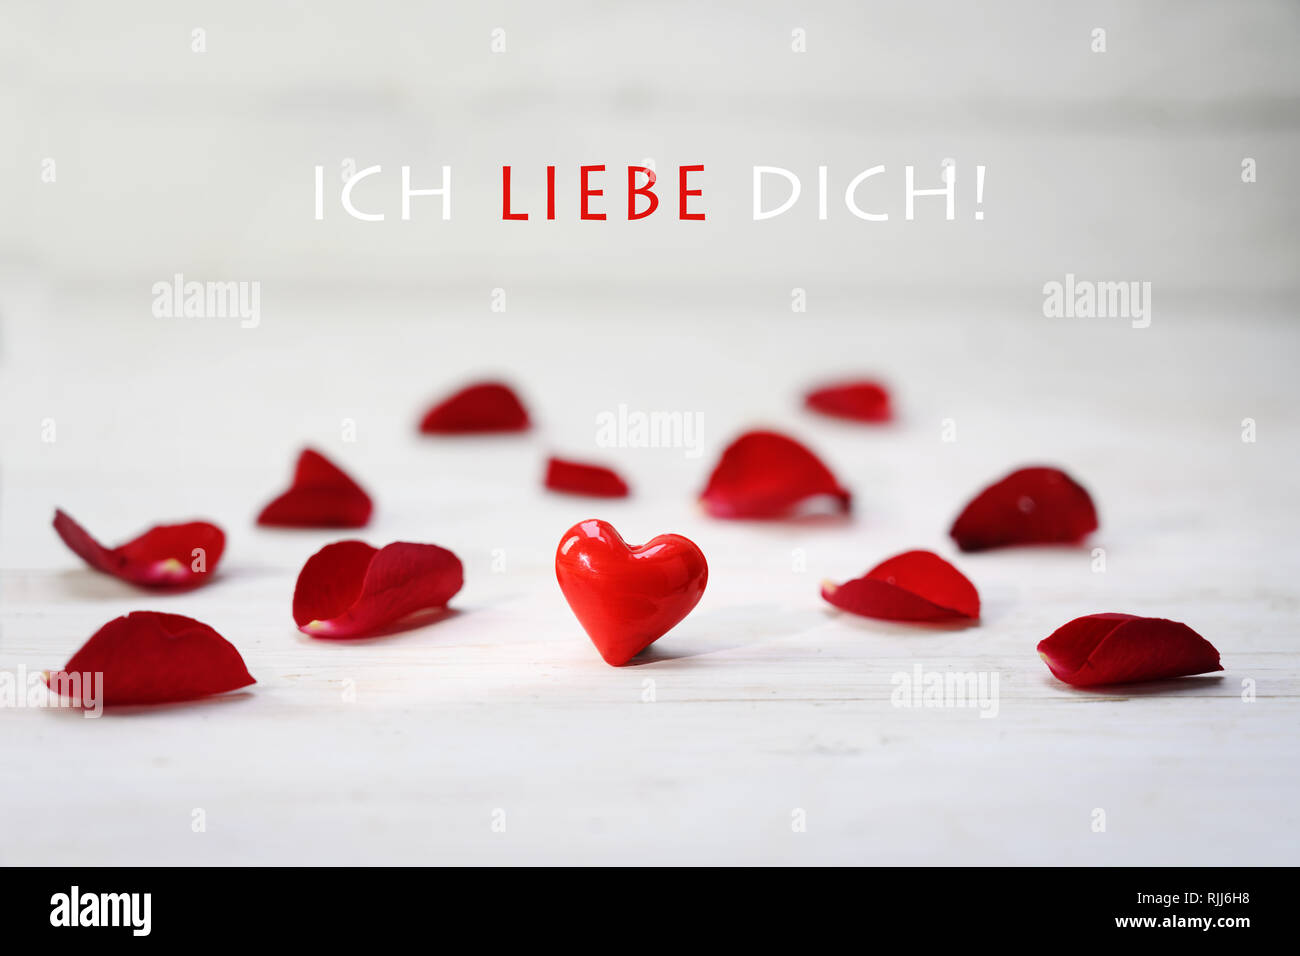 Coeur en verre rouge entre des pétales de rose sur un fond de bois gris clair, texte allemand ich liebe dich, qui signifie "je t'aime, de mise au point sélectionnée, la profondeur de l'étroit Banque D'Images